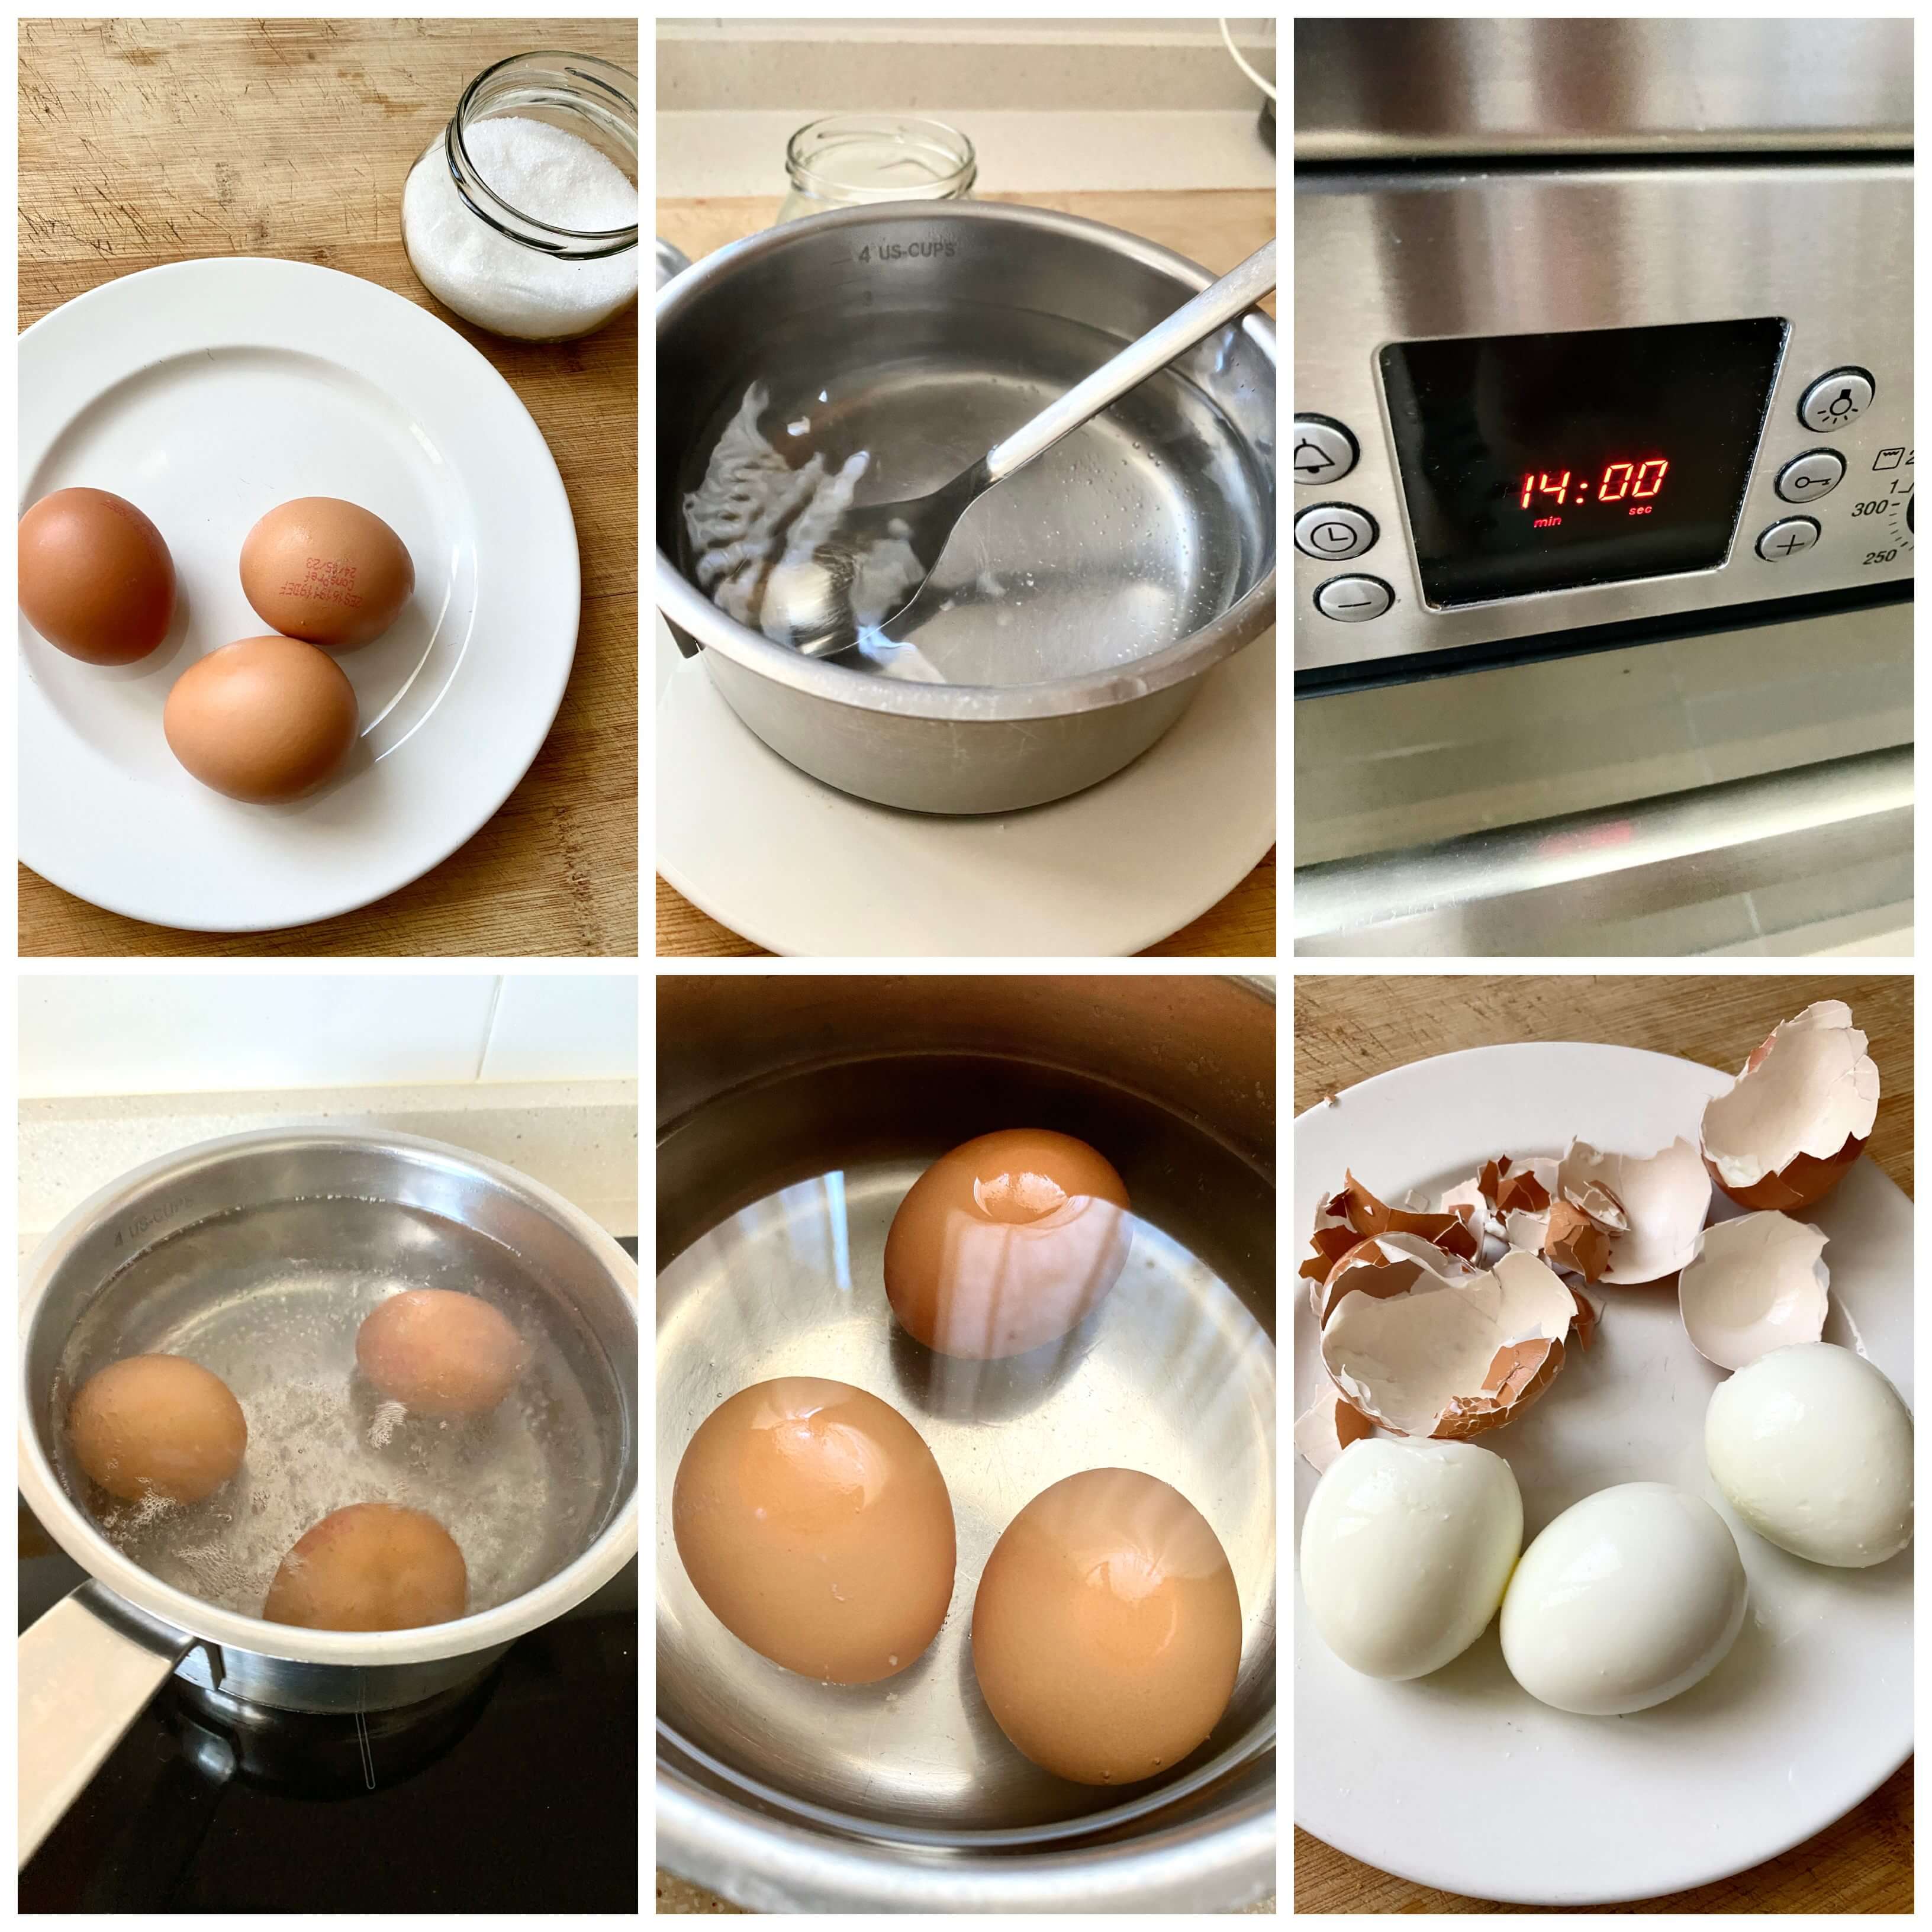 Hola os enseño cómo hervir huevos en 10' microondas con nuestra